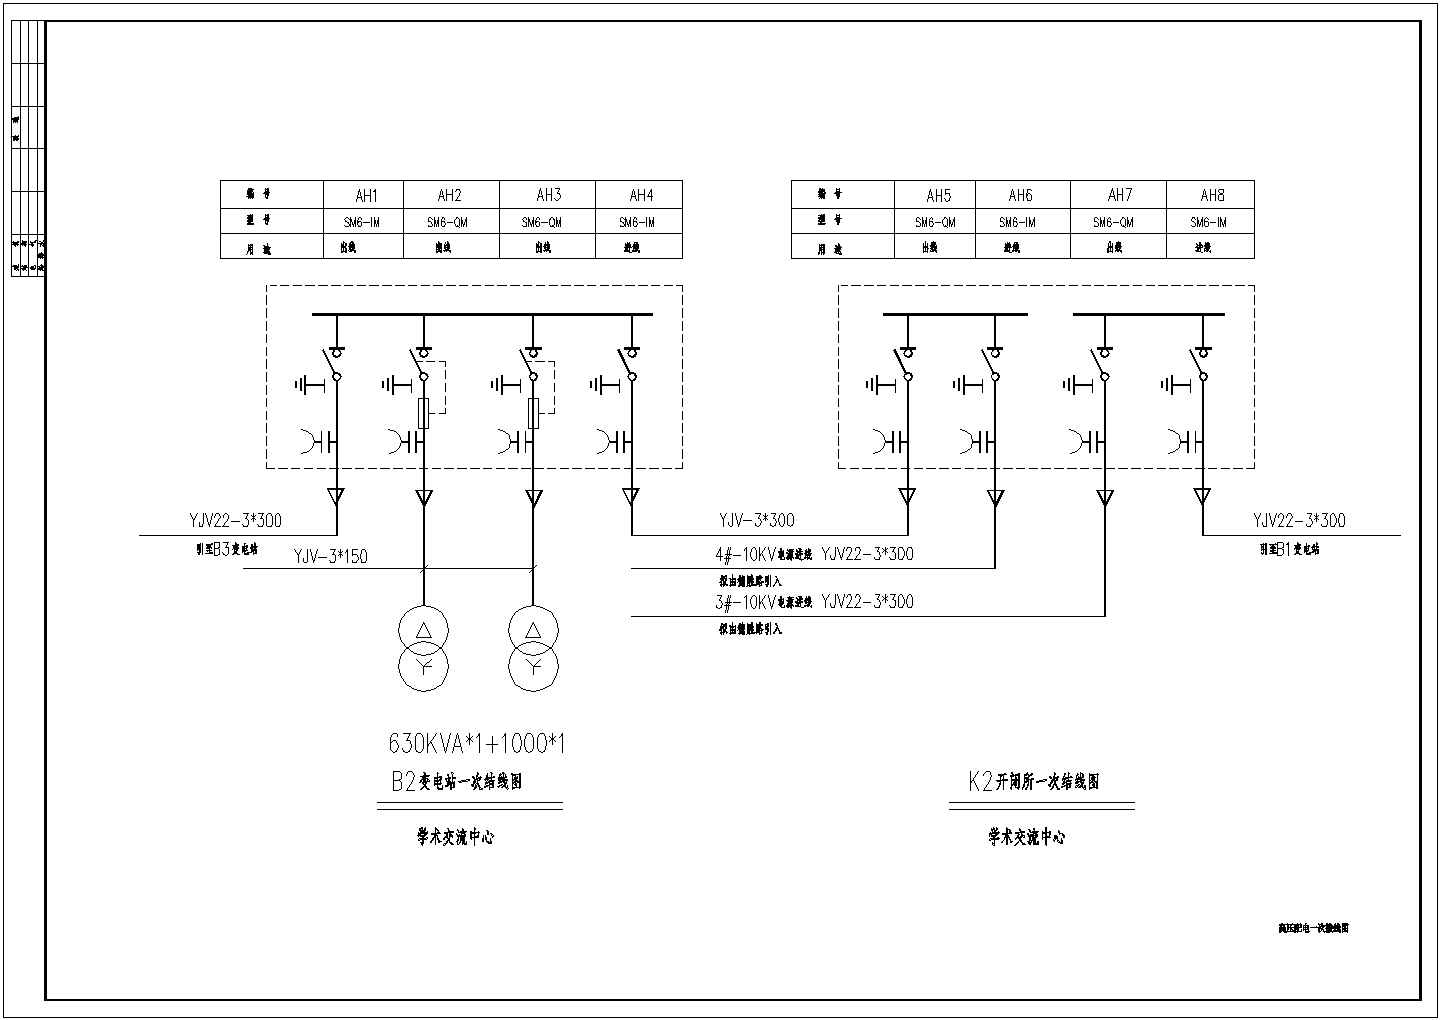 某高压配电CAD设计详细系统图